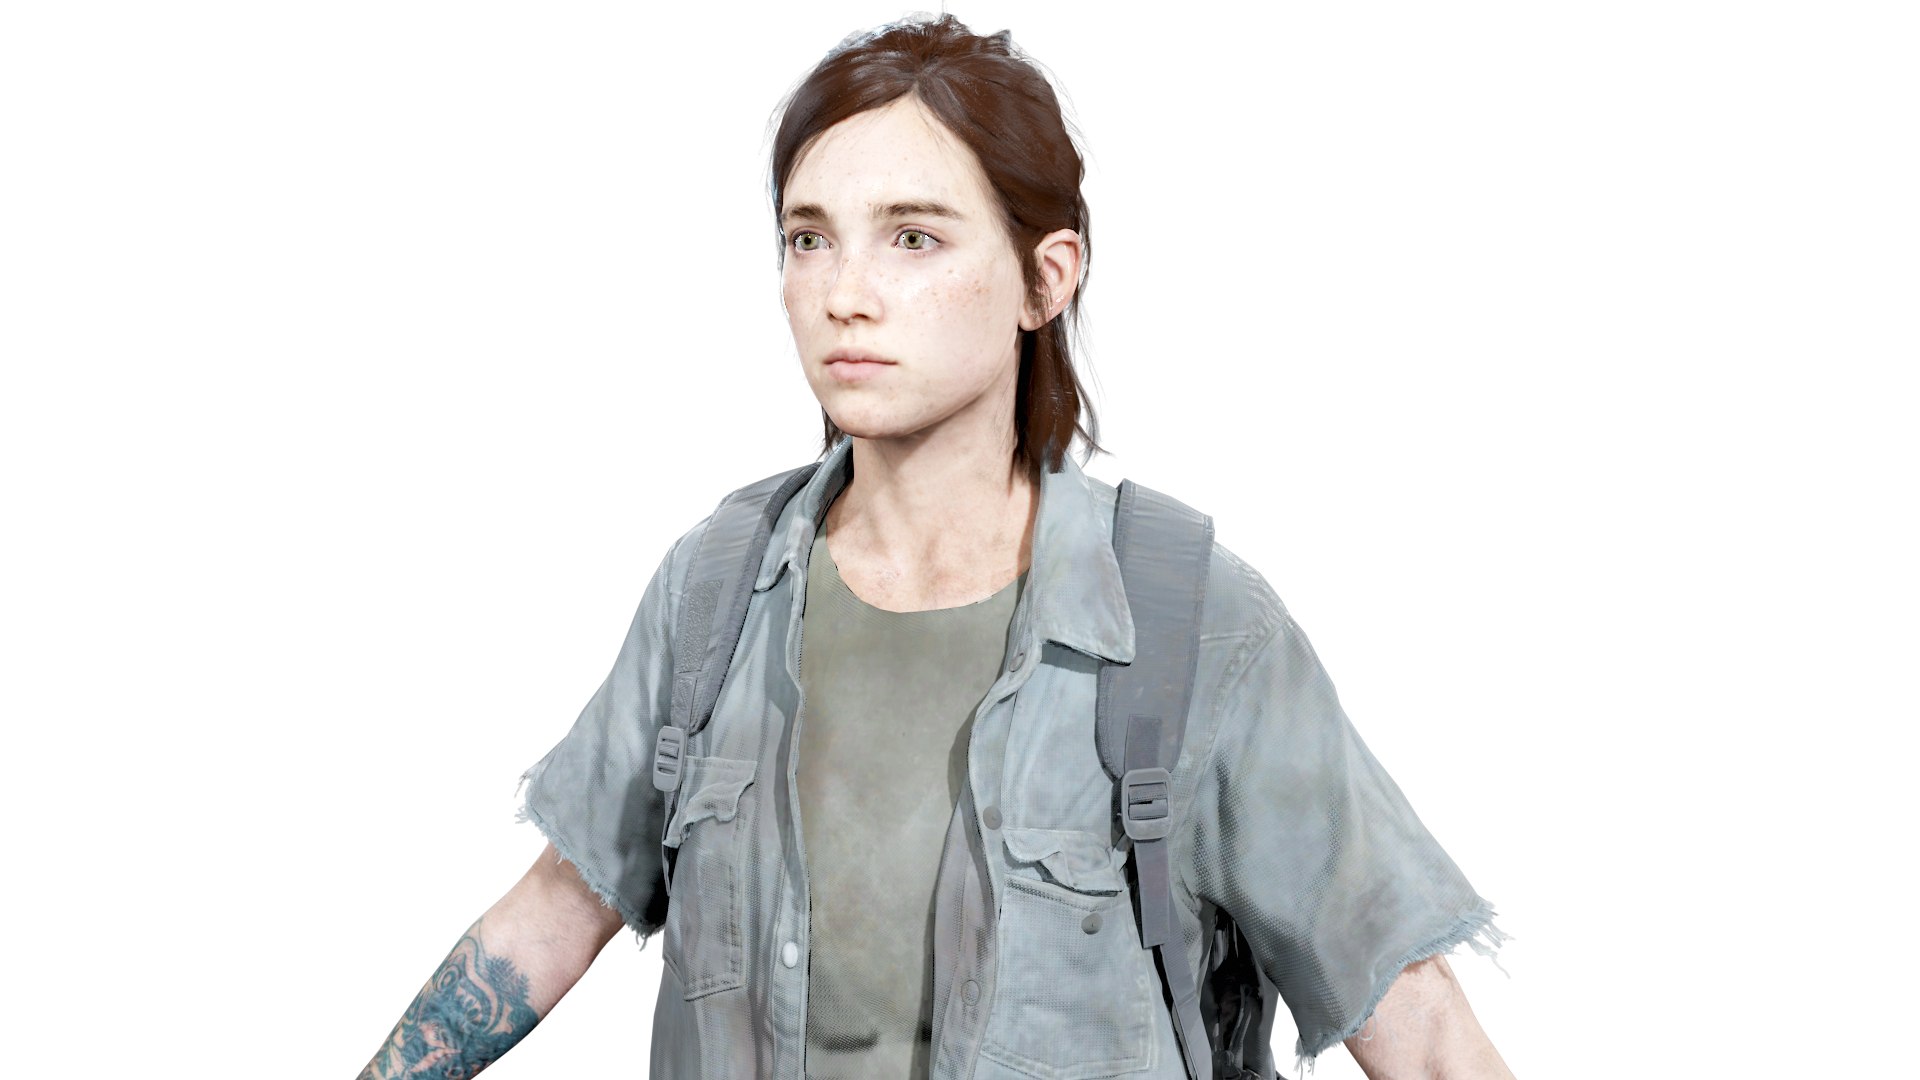 3D Ellie The Last of Us - TurboSquid 2029155